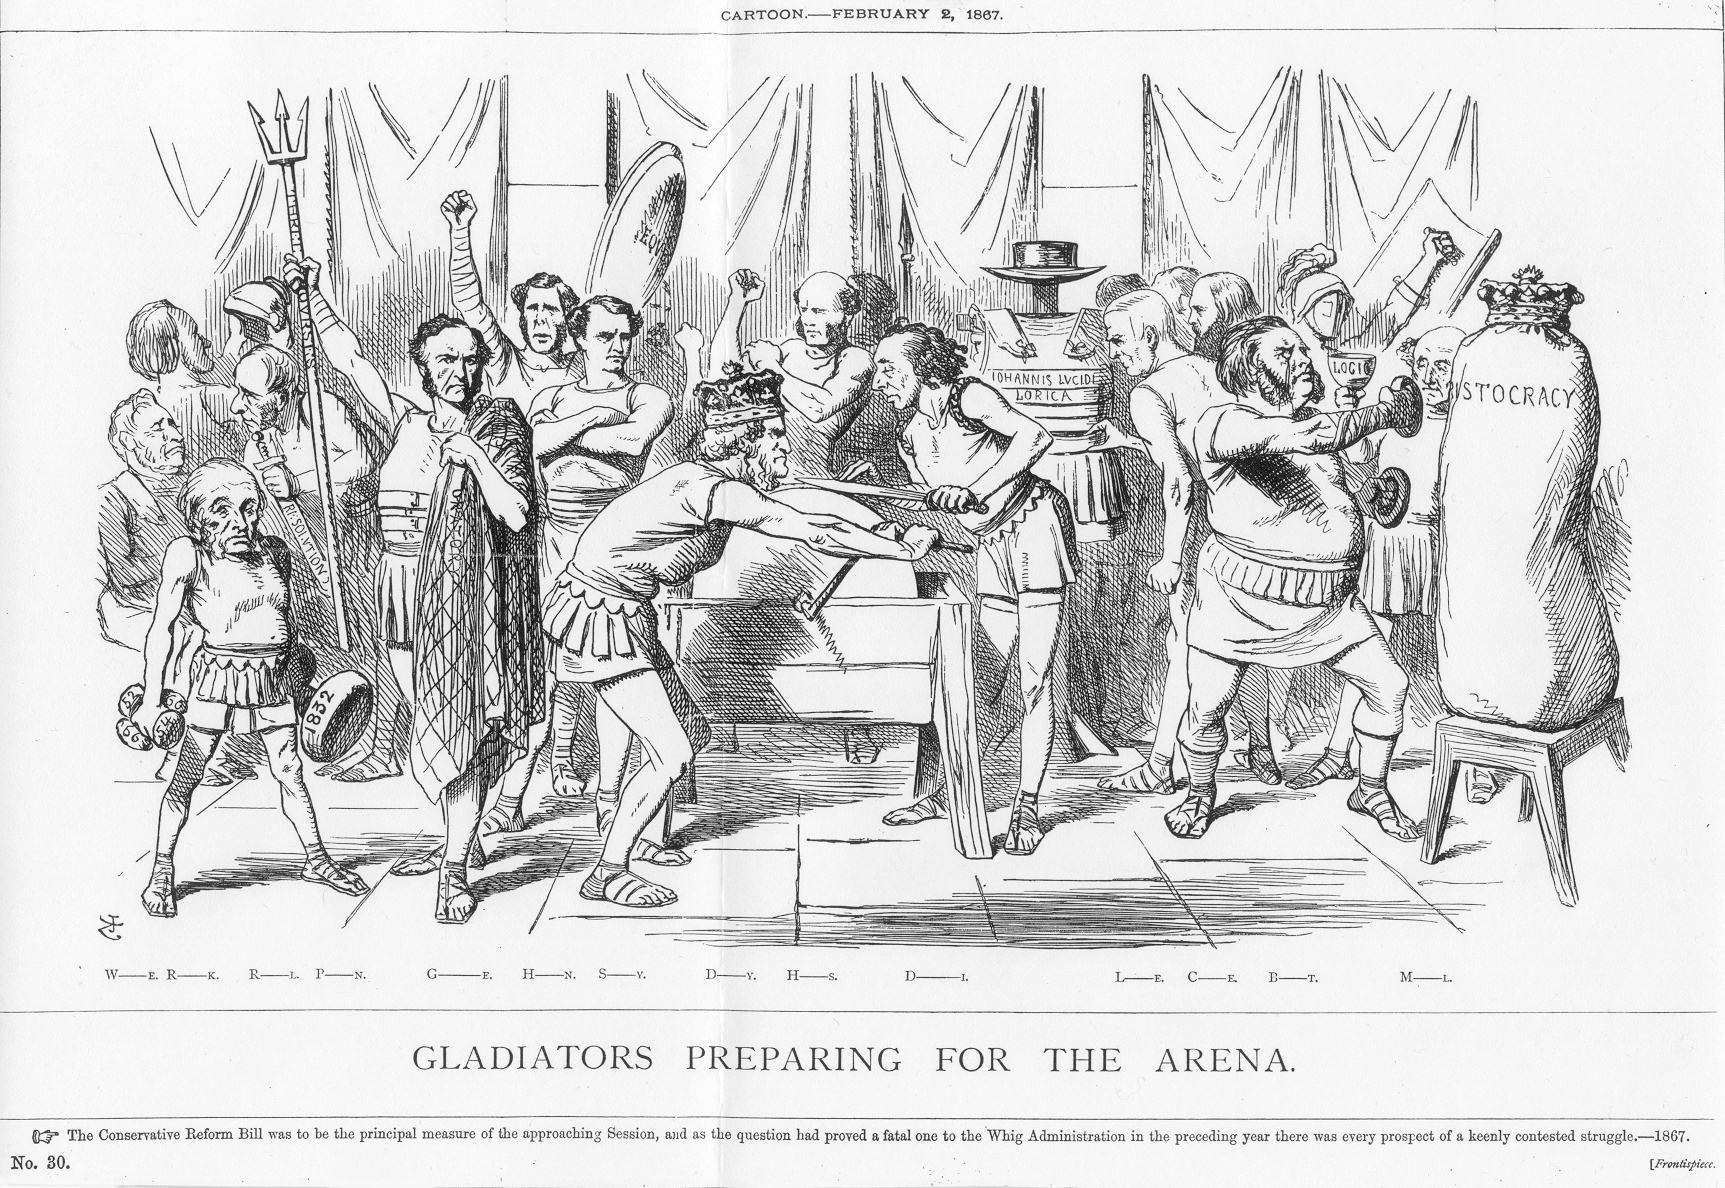 Figure 3. Gladiators preparing for the arena.